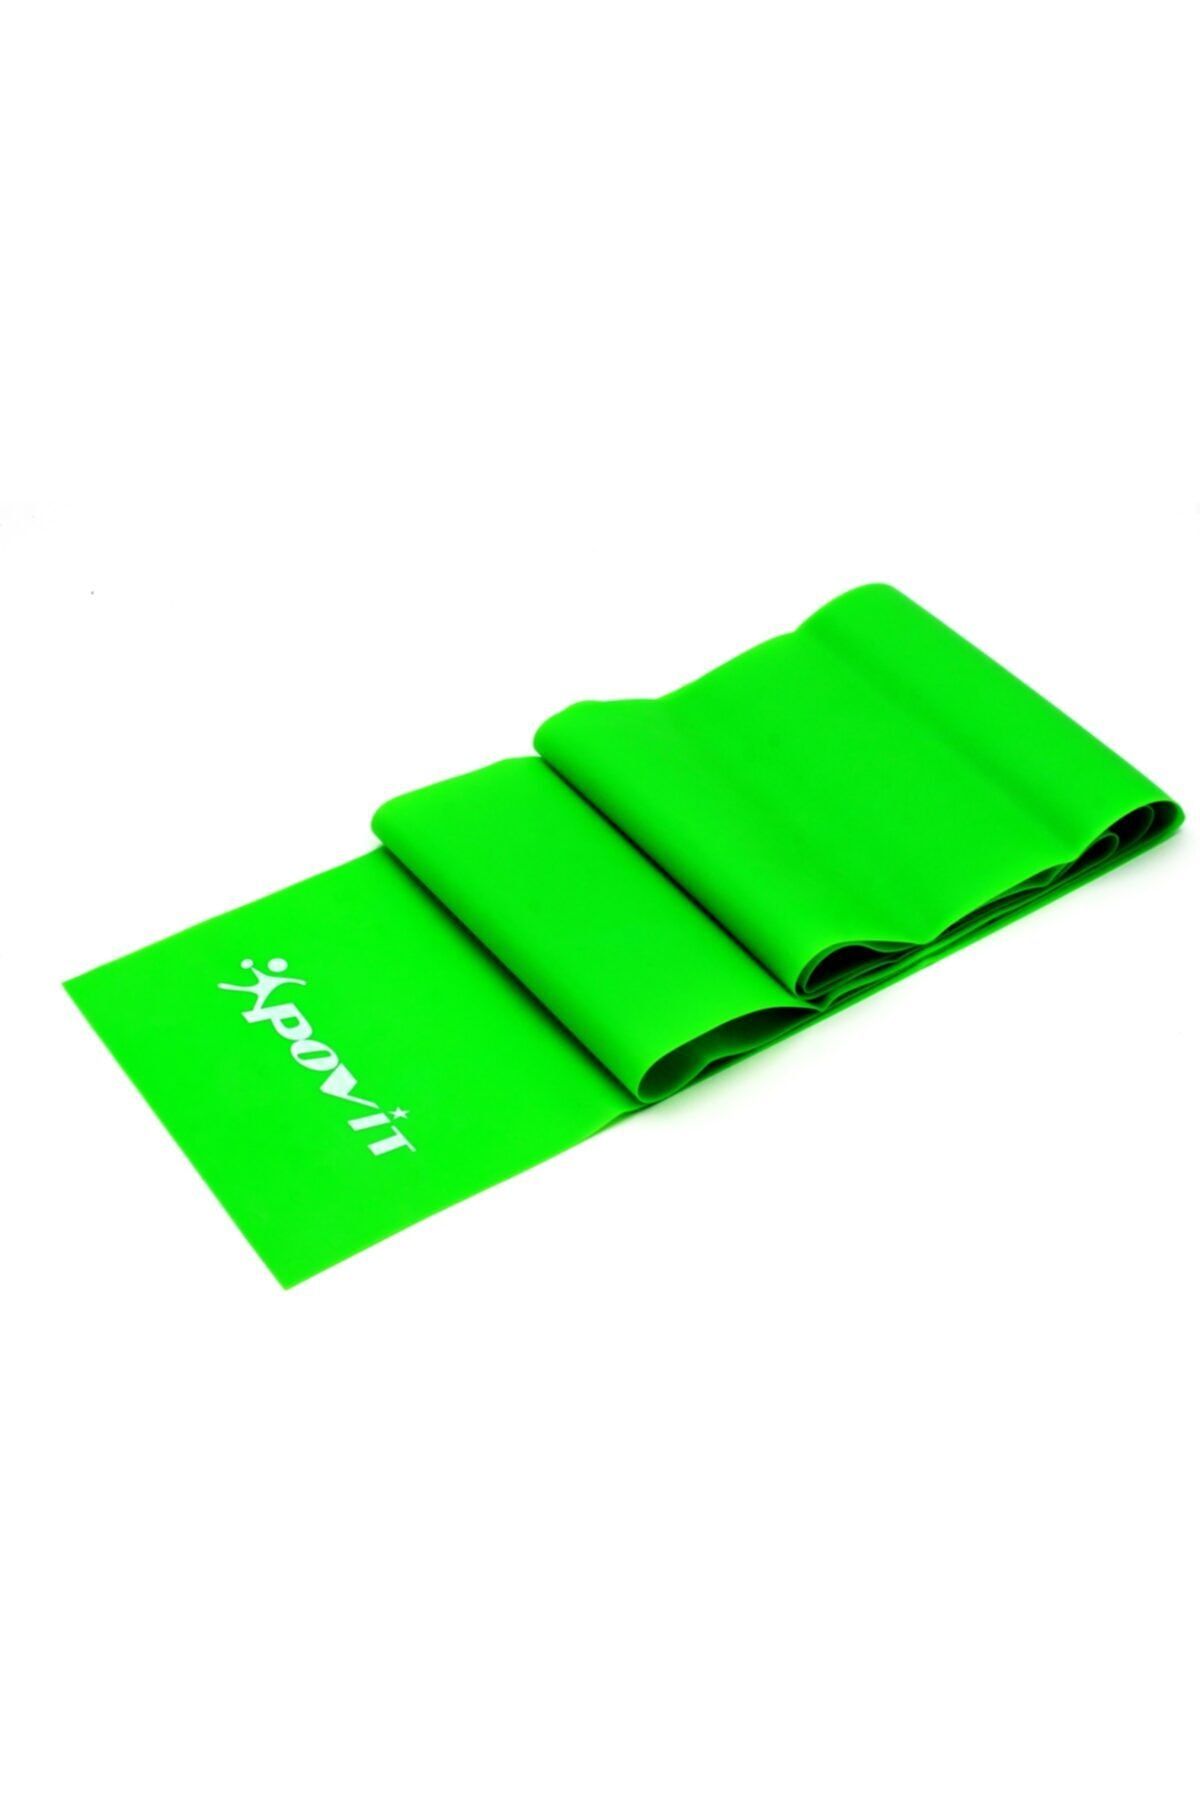 Povit Yeşil Pilates Bandı Tam Sert Egzersiz Direnç Lastiği 150 X 15 Cm Lks4070